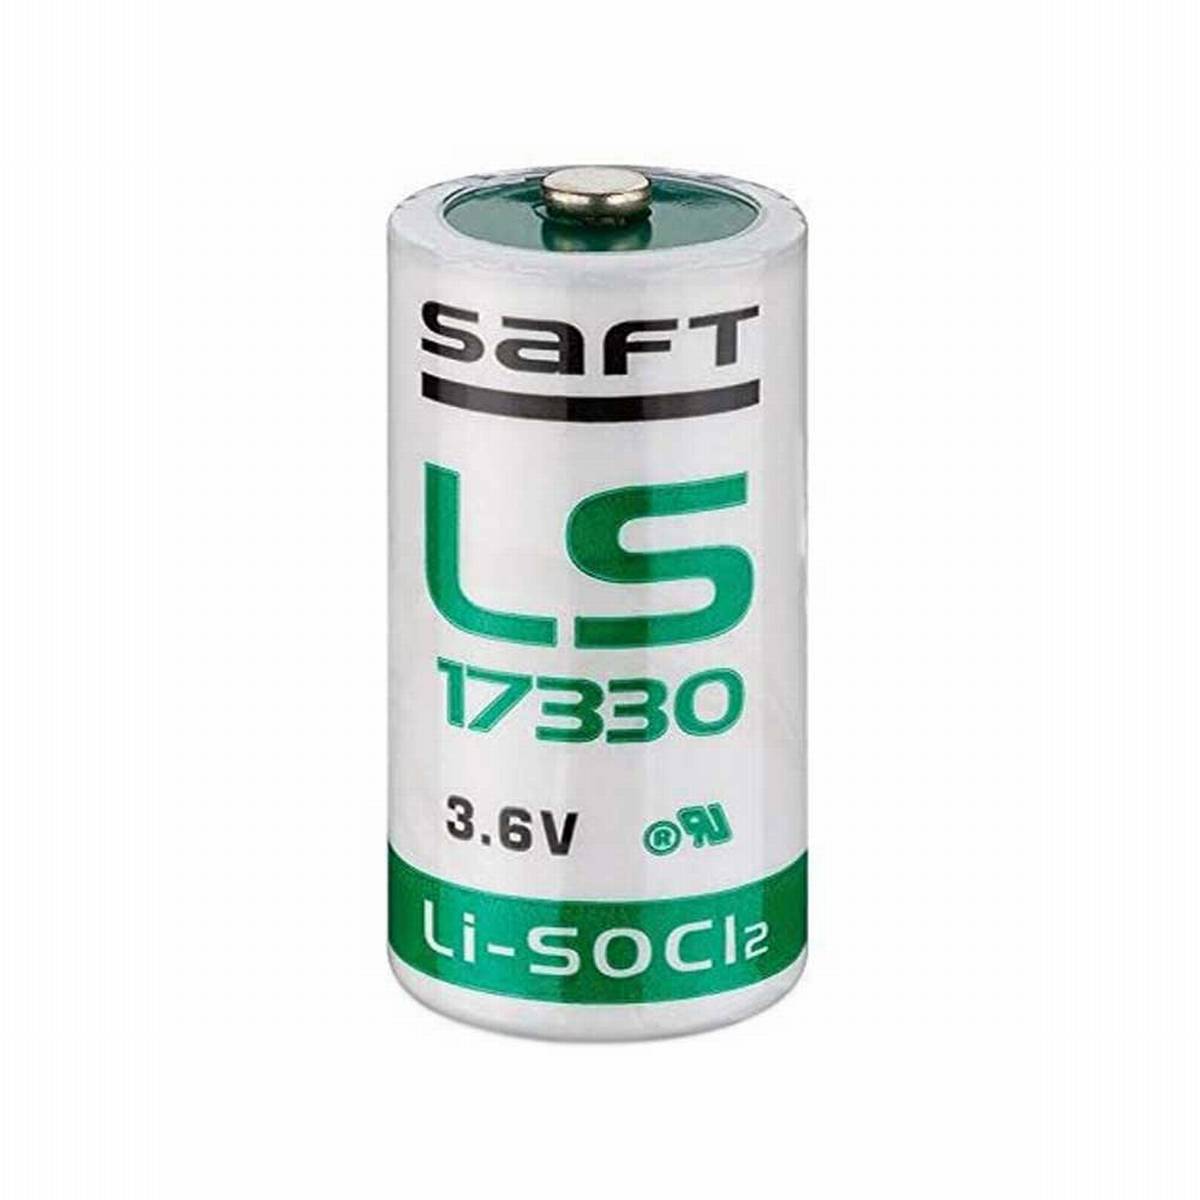 Saft LS 17330 2/3 A batteria al litio 3.6V 2100mAH UN3090 - SV188